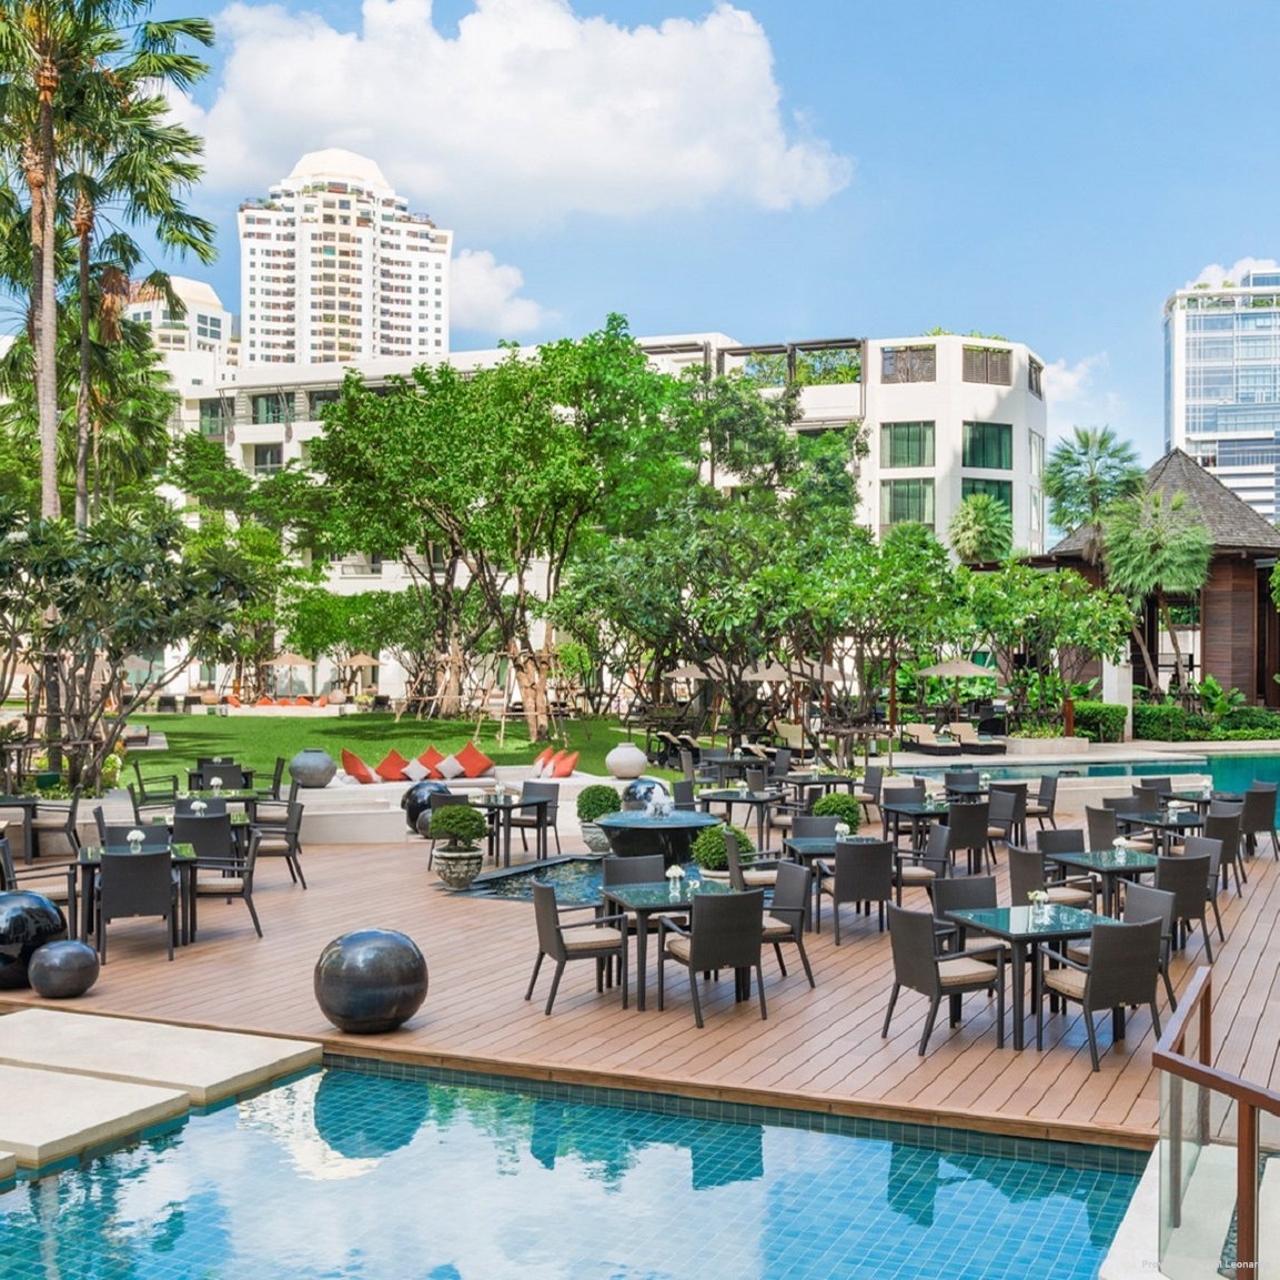 Siam Kempinski Hotel Bangkok Bangkok At Hrs With Free Services